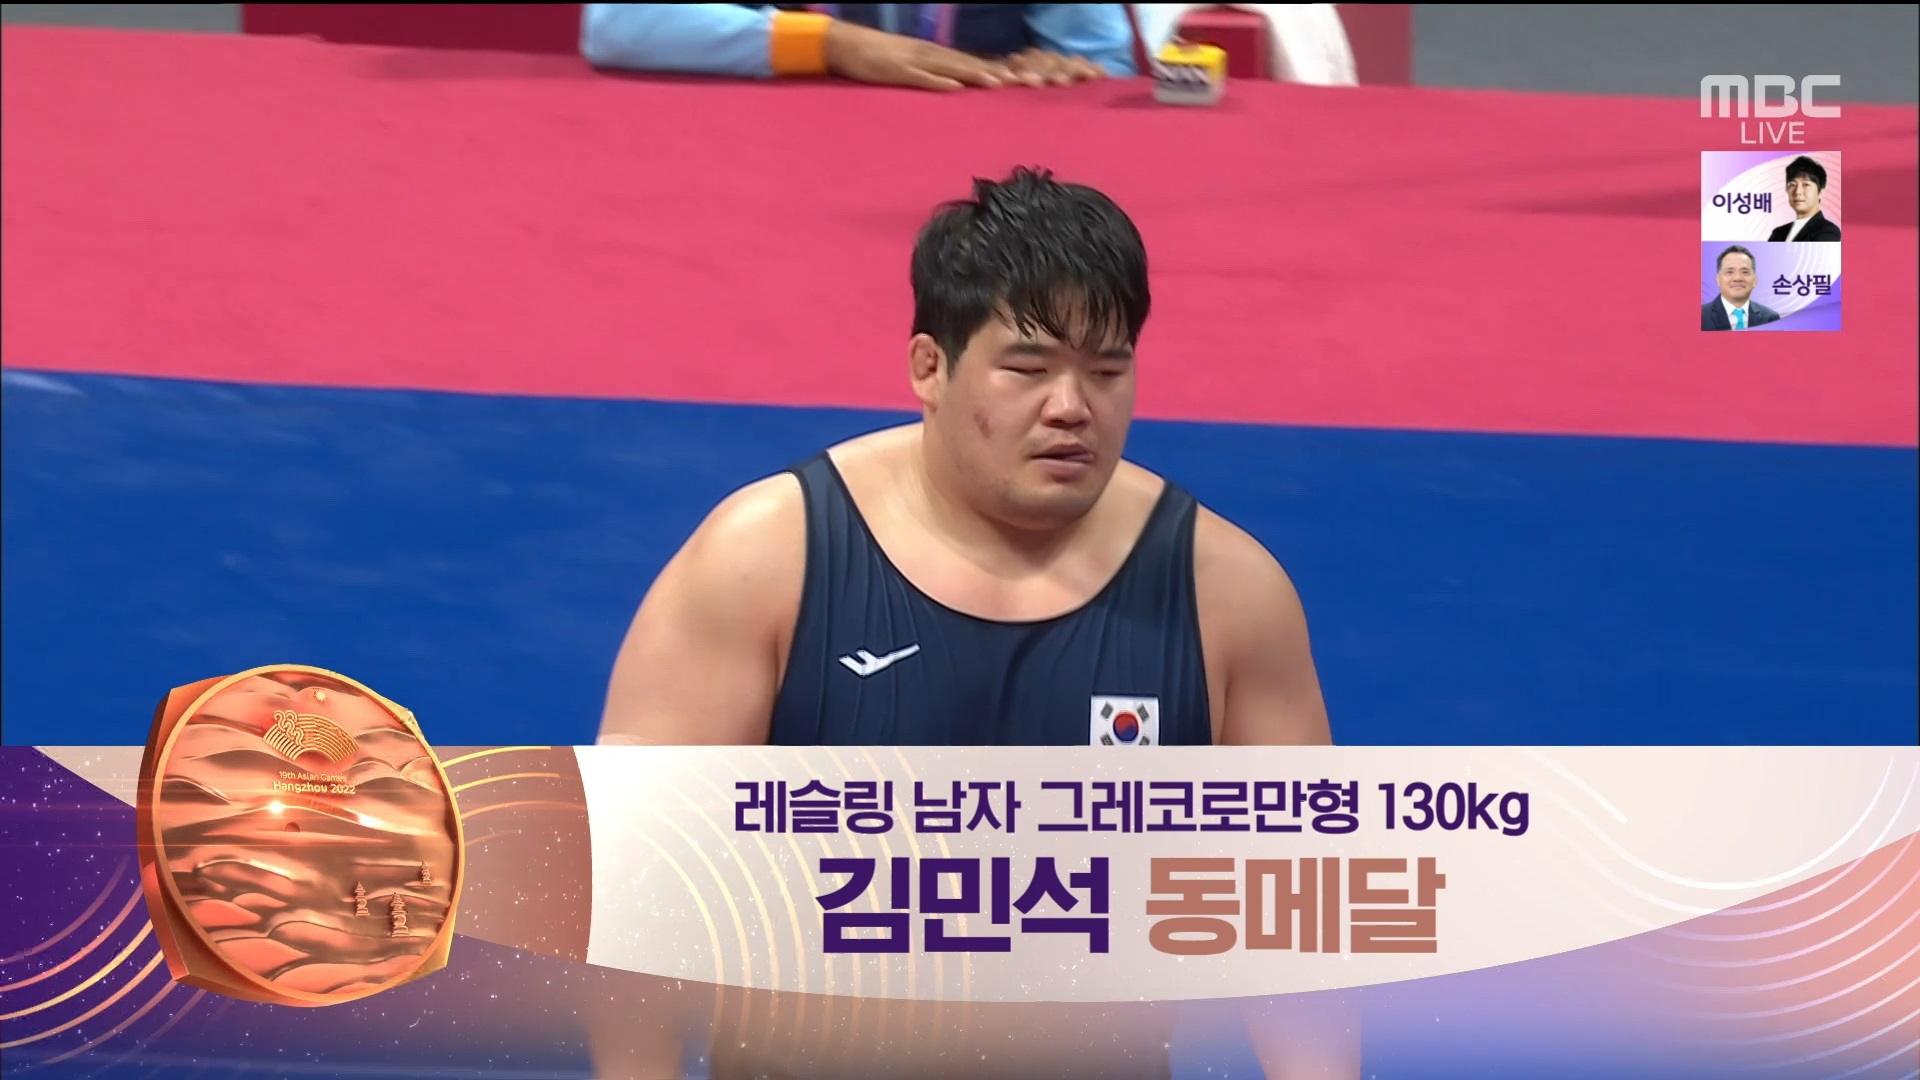 레슬링 | 그레코로만형 130kg 동메달전...김민석, 상대를 제압하며 동메달행! 이미지